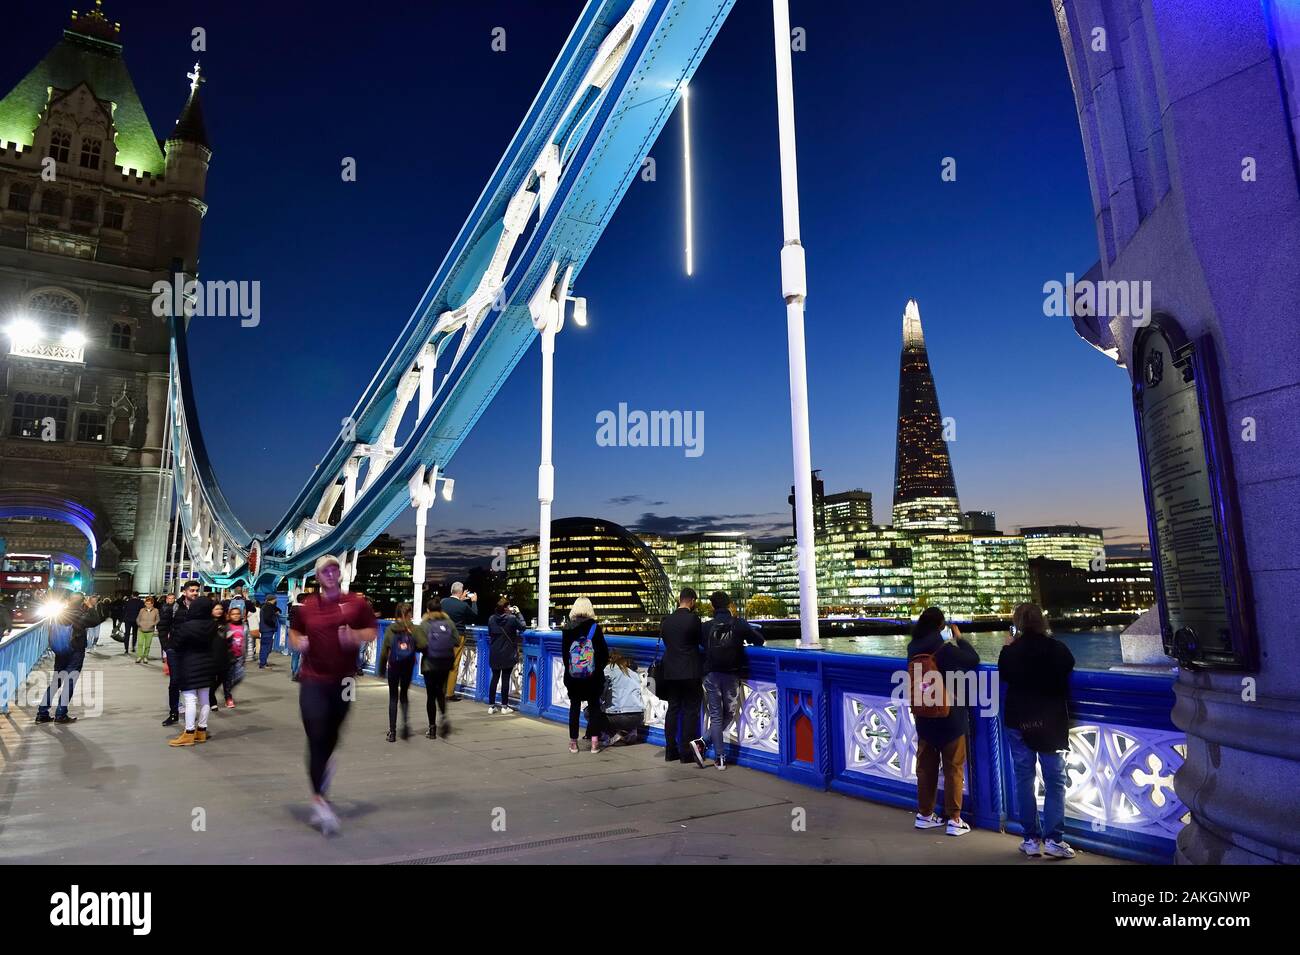 Royaume-uni, Londres, Tower Bridge, pont traversant la Tamise, entre les quartiers de Southwark et de Tower Hamlets et le Shard London Bridge Tower de l'architecte Renzo Piano, la plus haute tour de Londres Banque D'Images